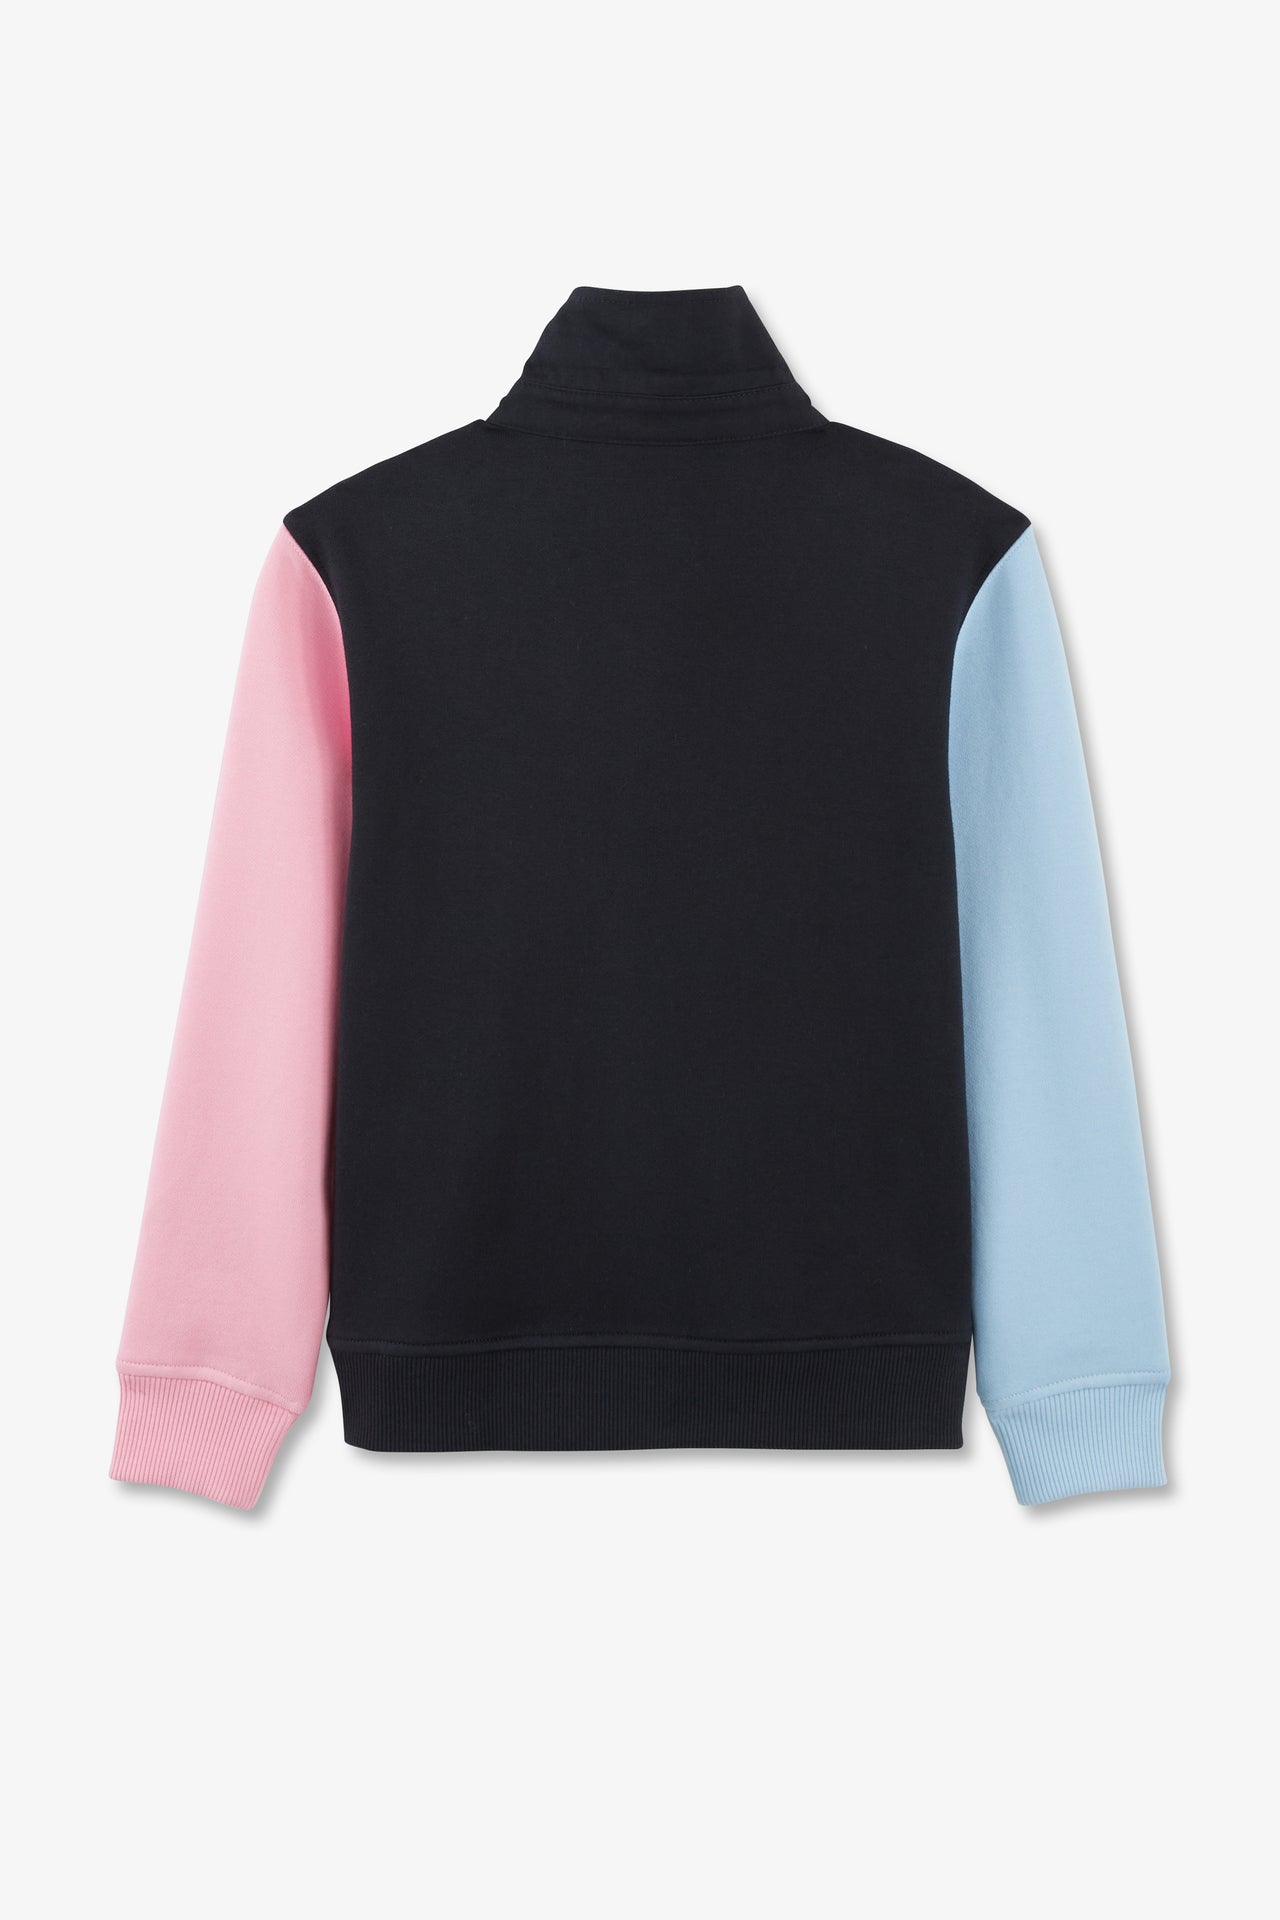 Sweatshirt col polo marine manches bicolores en coton